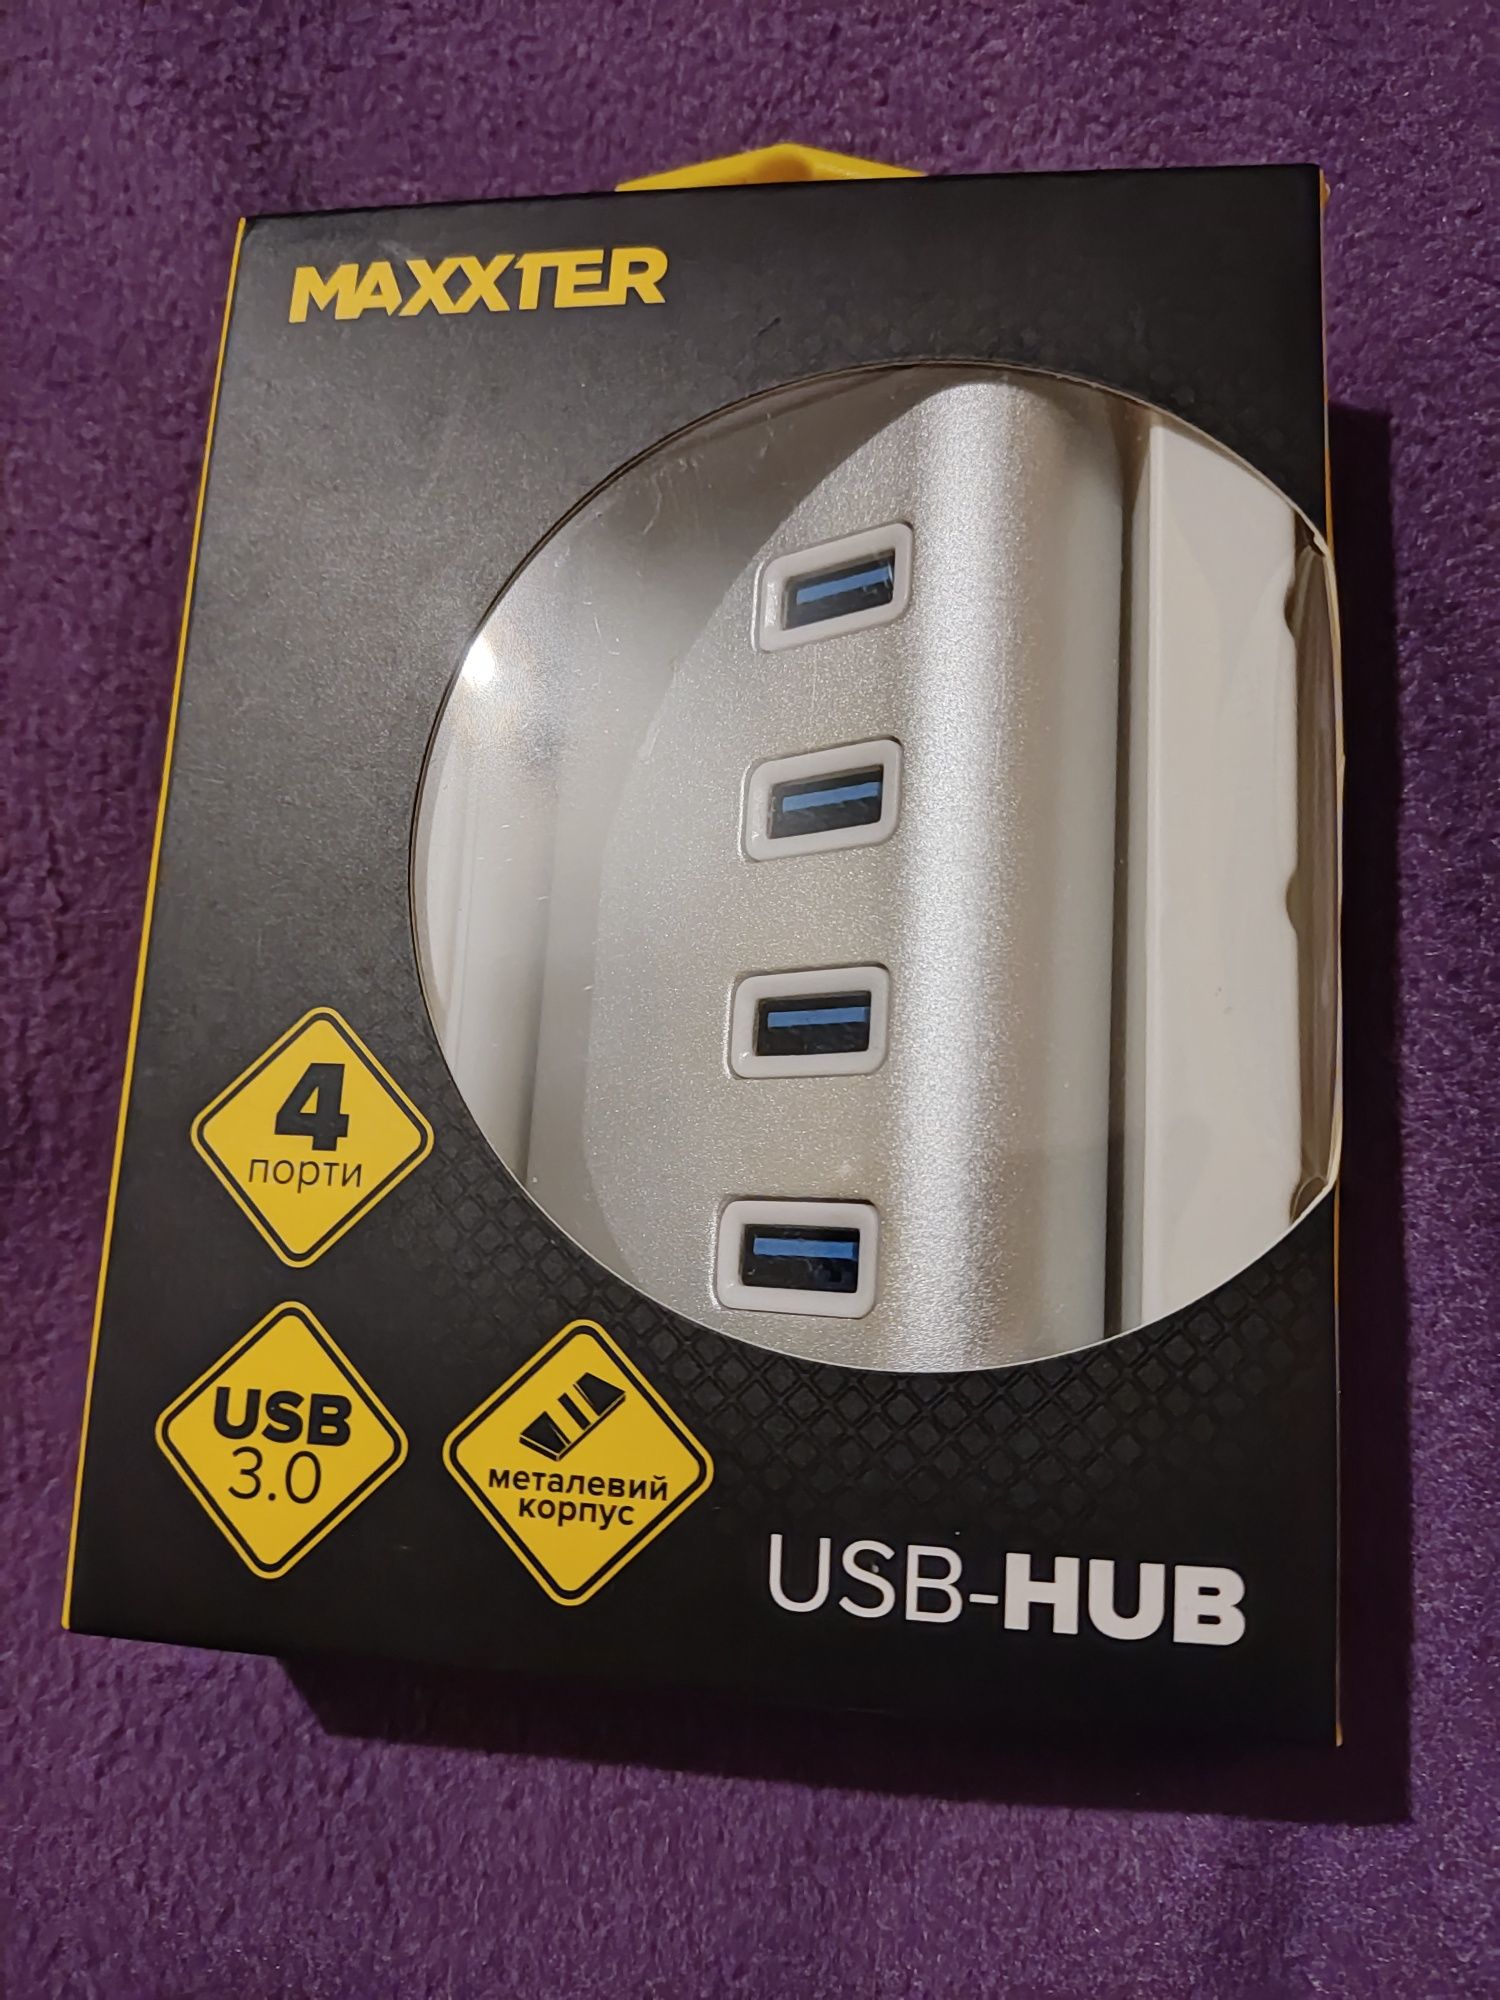 Maxxter USB hub 3.0